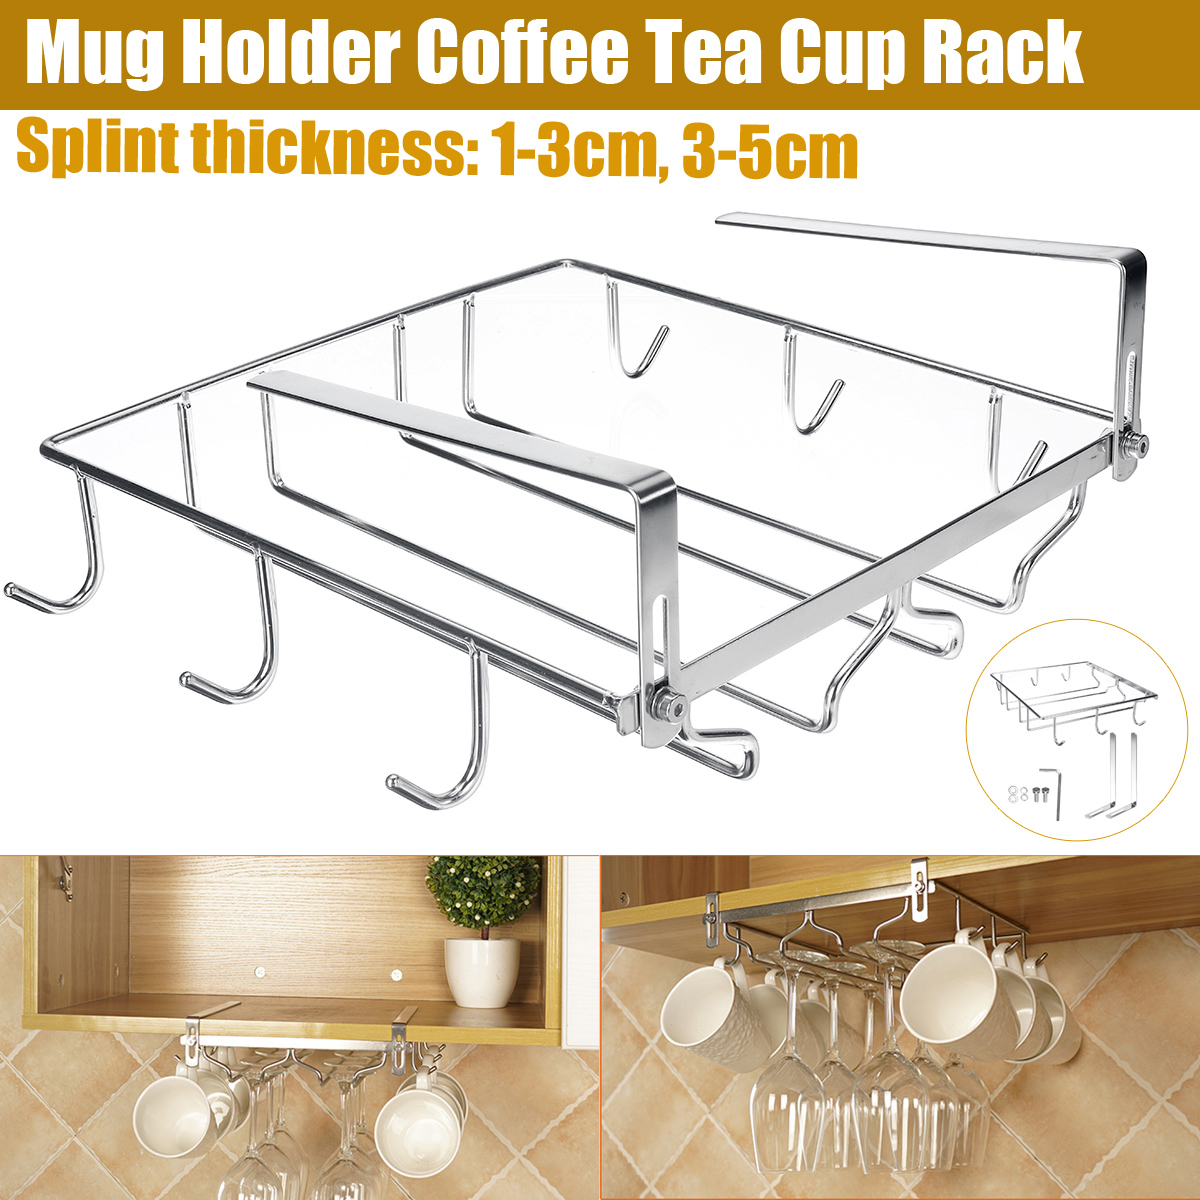 Mug-Holder-Coffee-Tea-Cup-Rack-Storage-Kitchen-Under-Shelf-Cabinet-Hanger-1780359-1